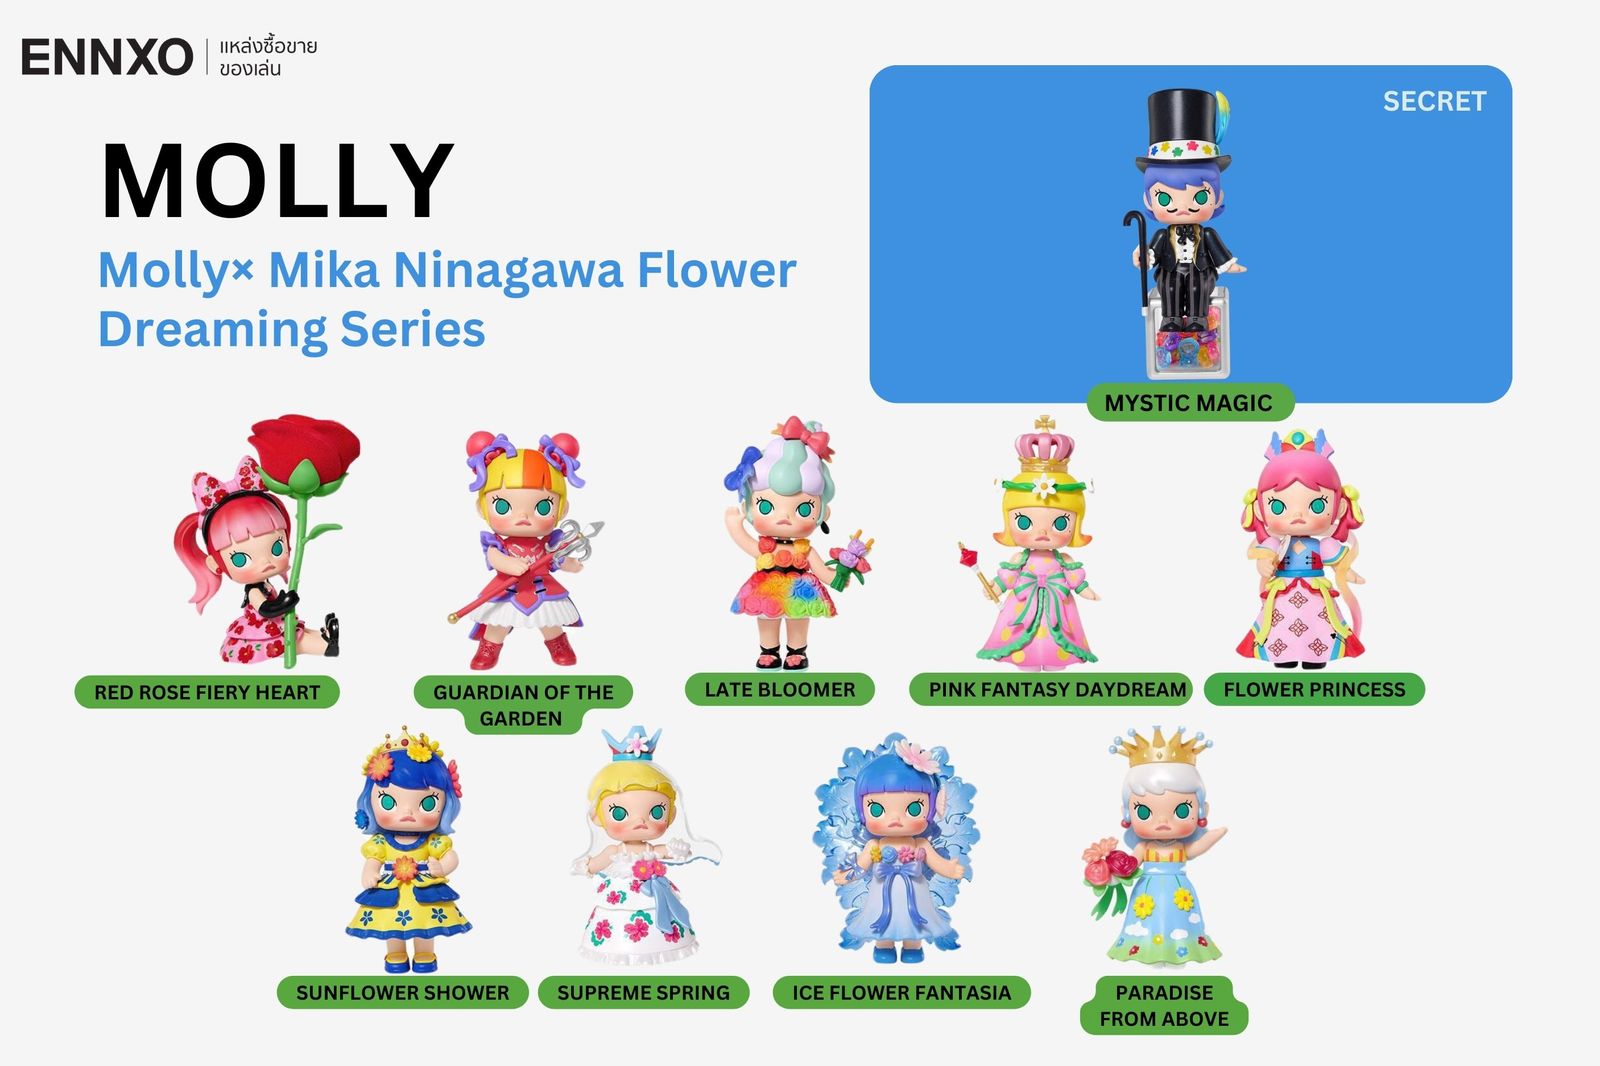 รวมคอลเลคชั่นมอลลี่ Molly× Mika Ninagawa Flower  Dreaming Series